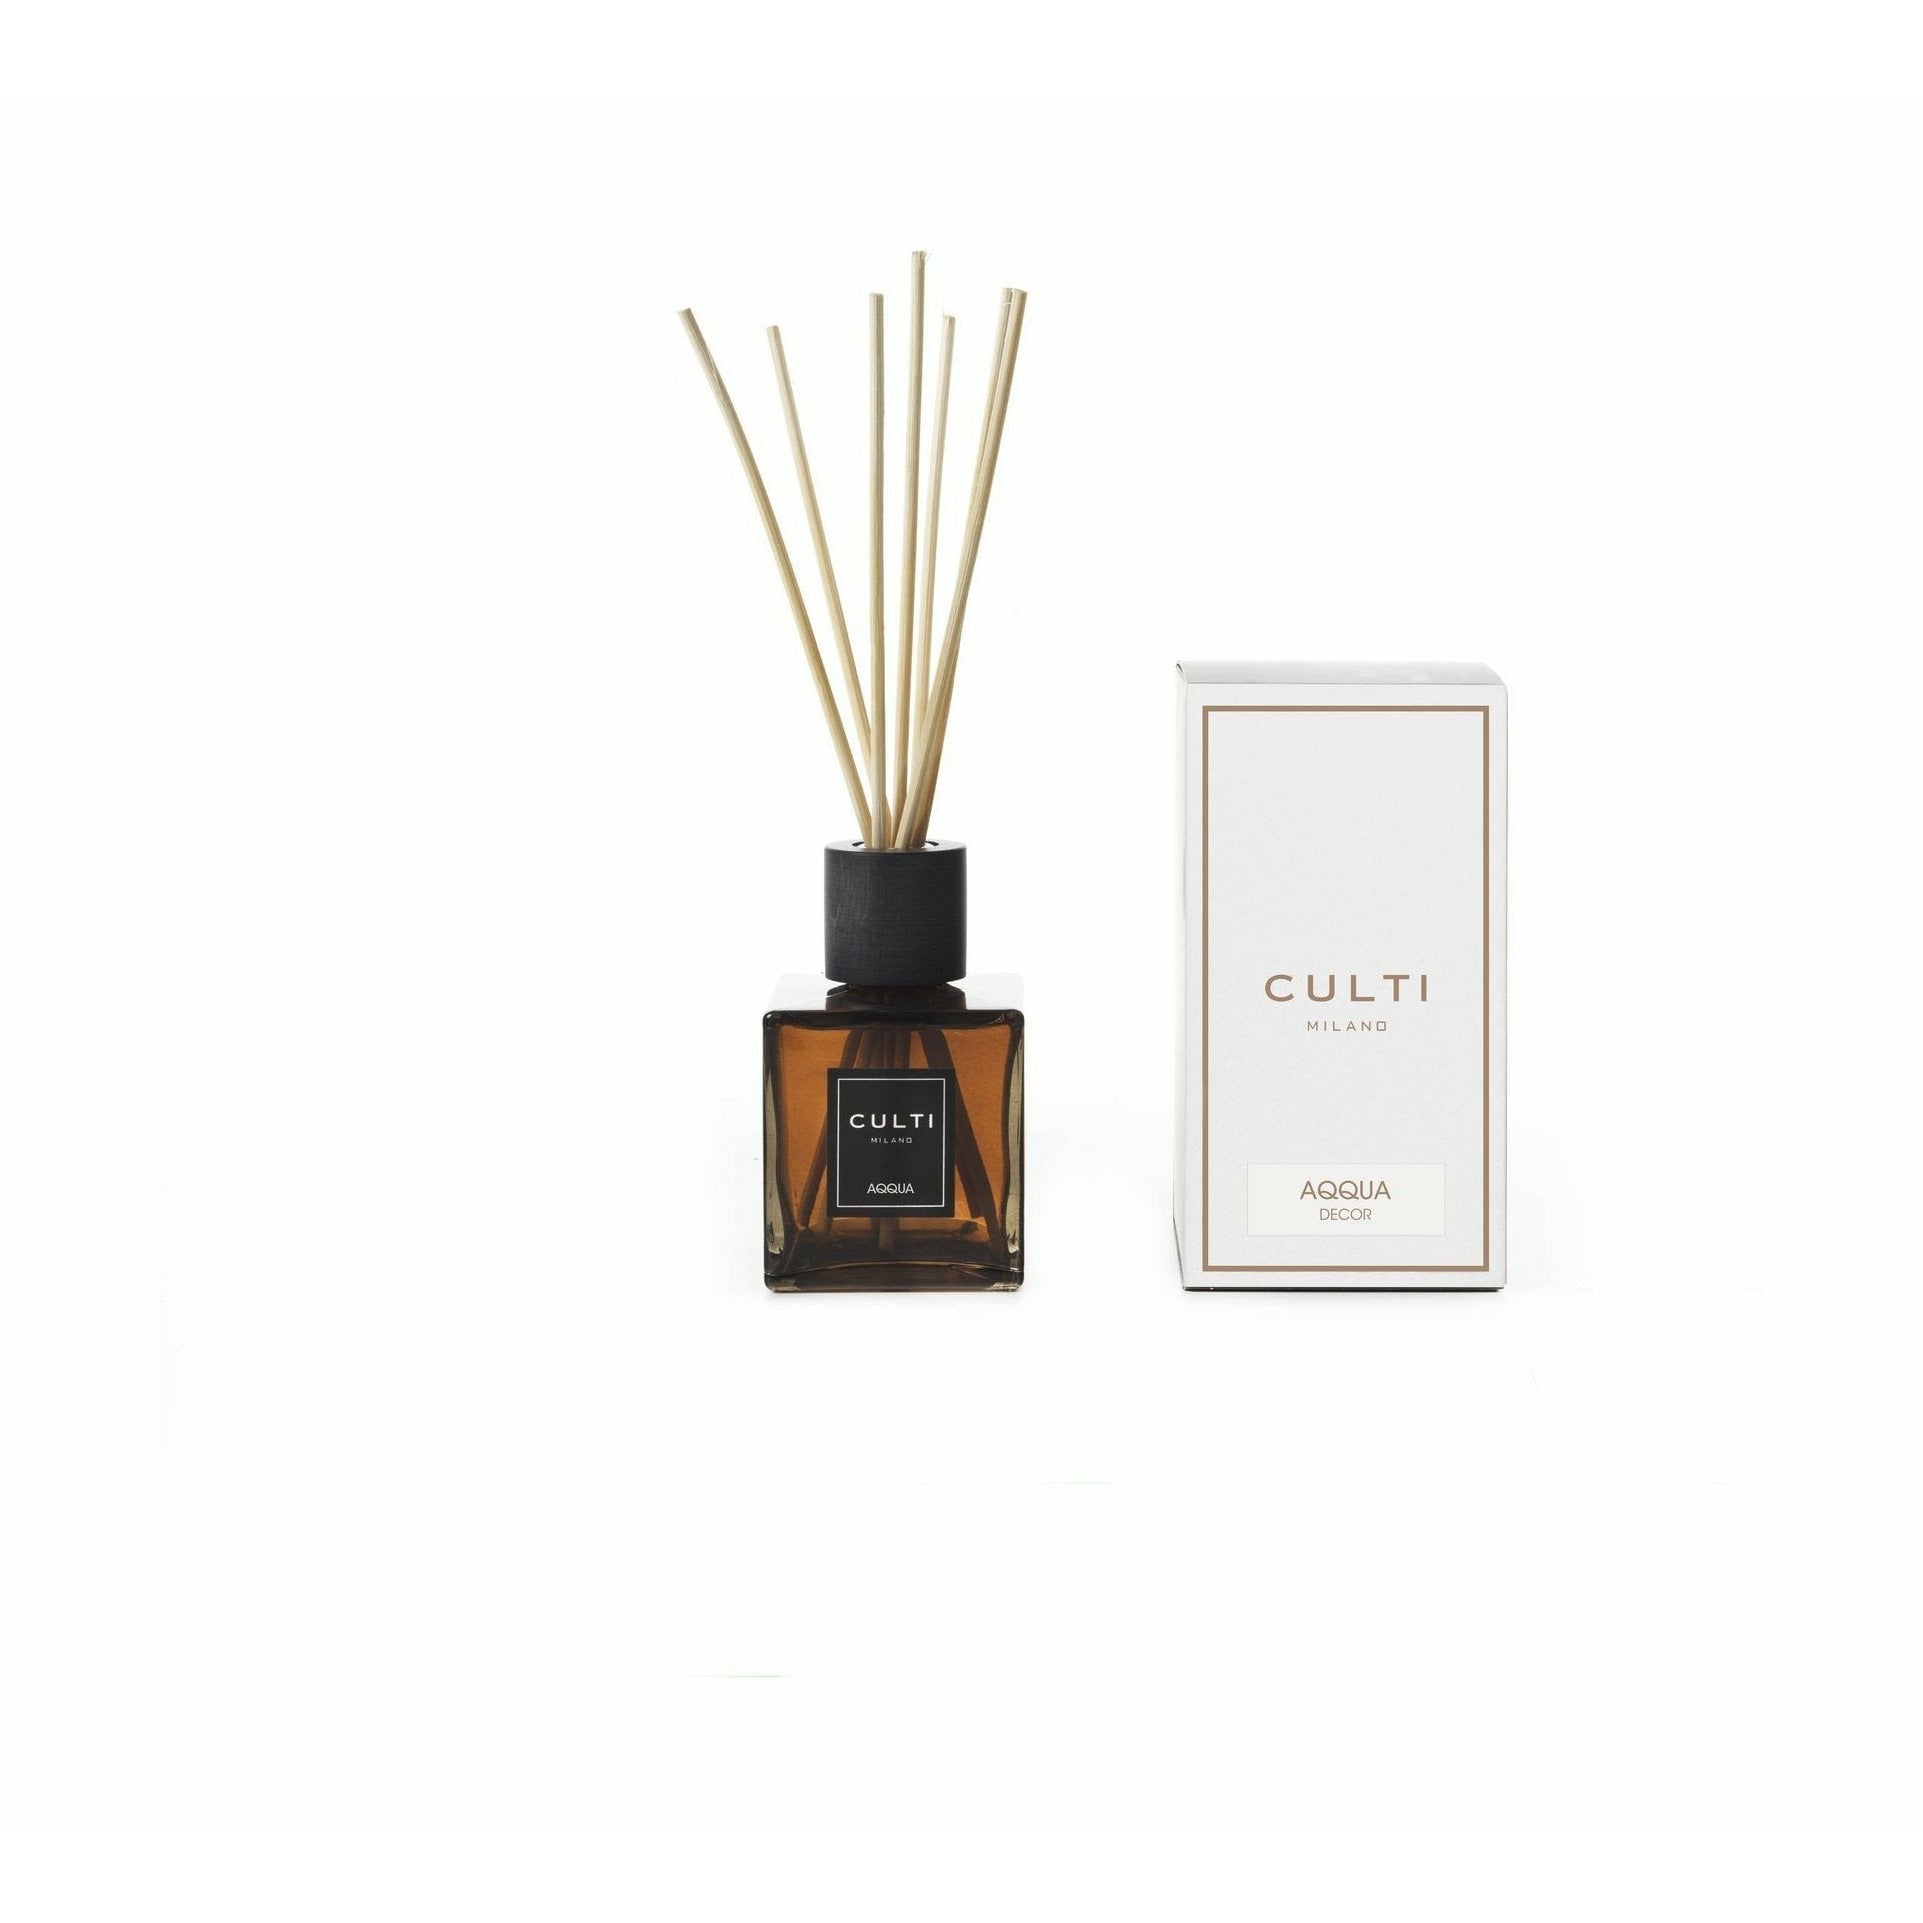 Culti Milano Decor Classic Fragrance Diffuser Aqqua, 250 Ml